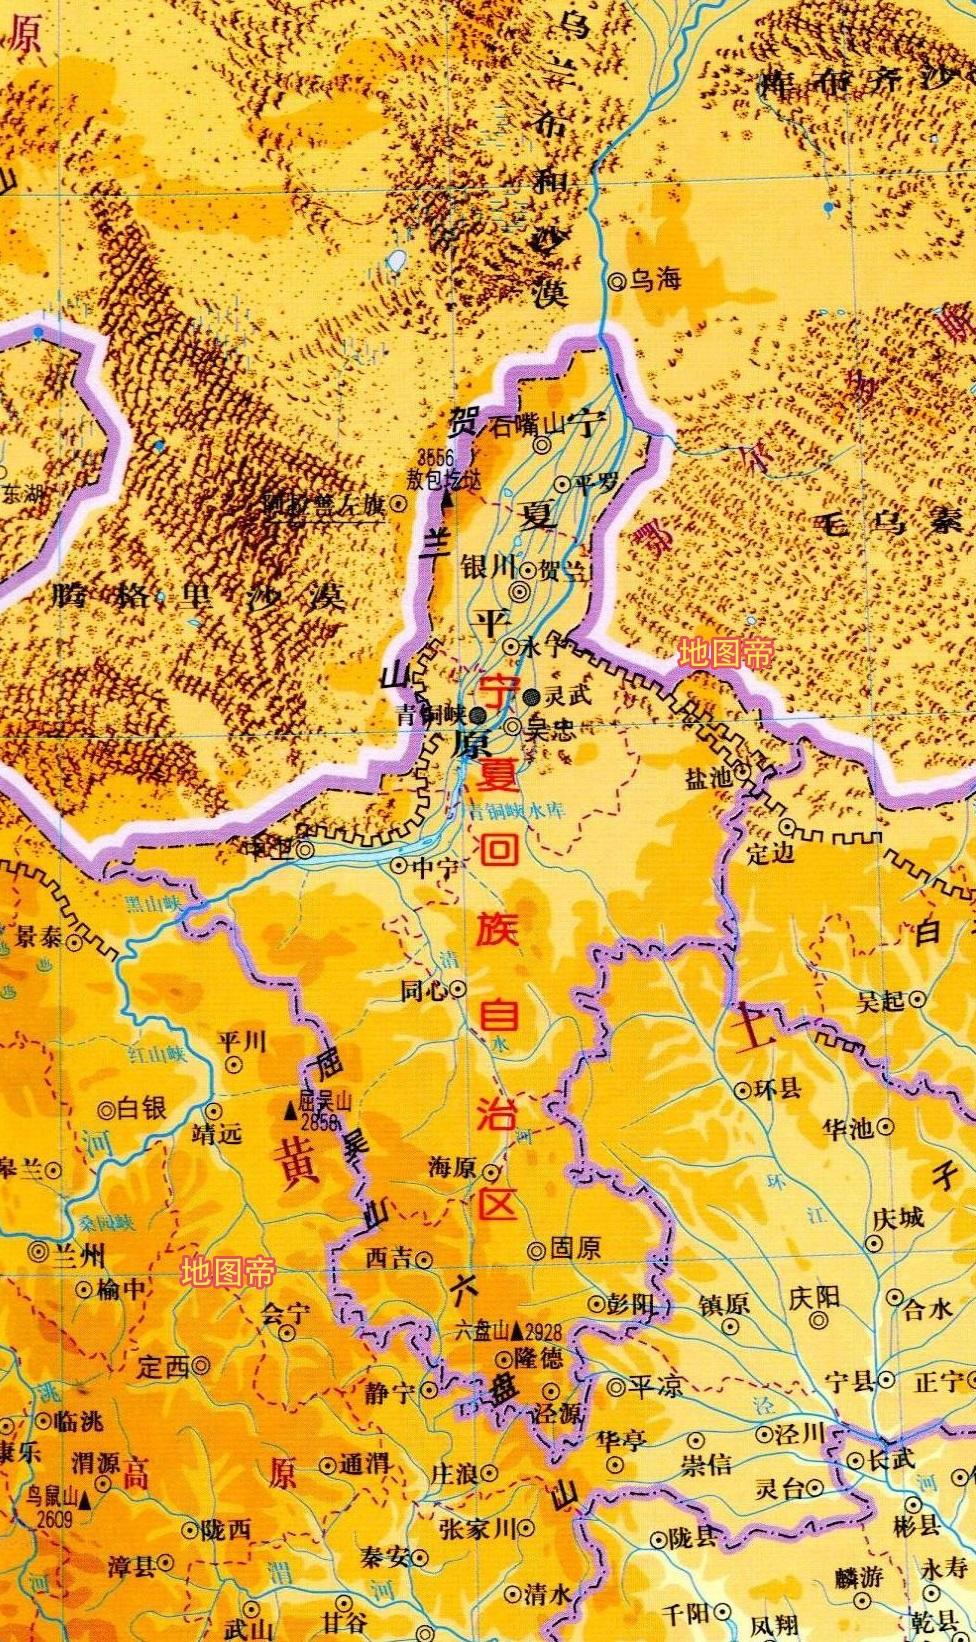 7张地形图快速了解宁夏首府银川市